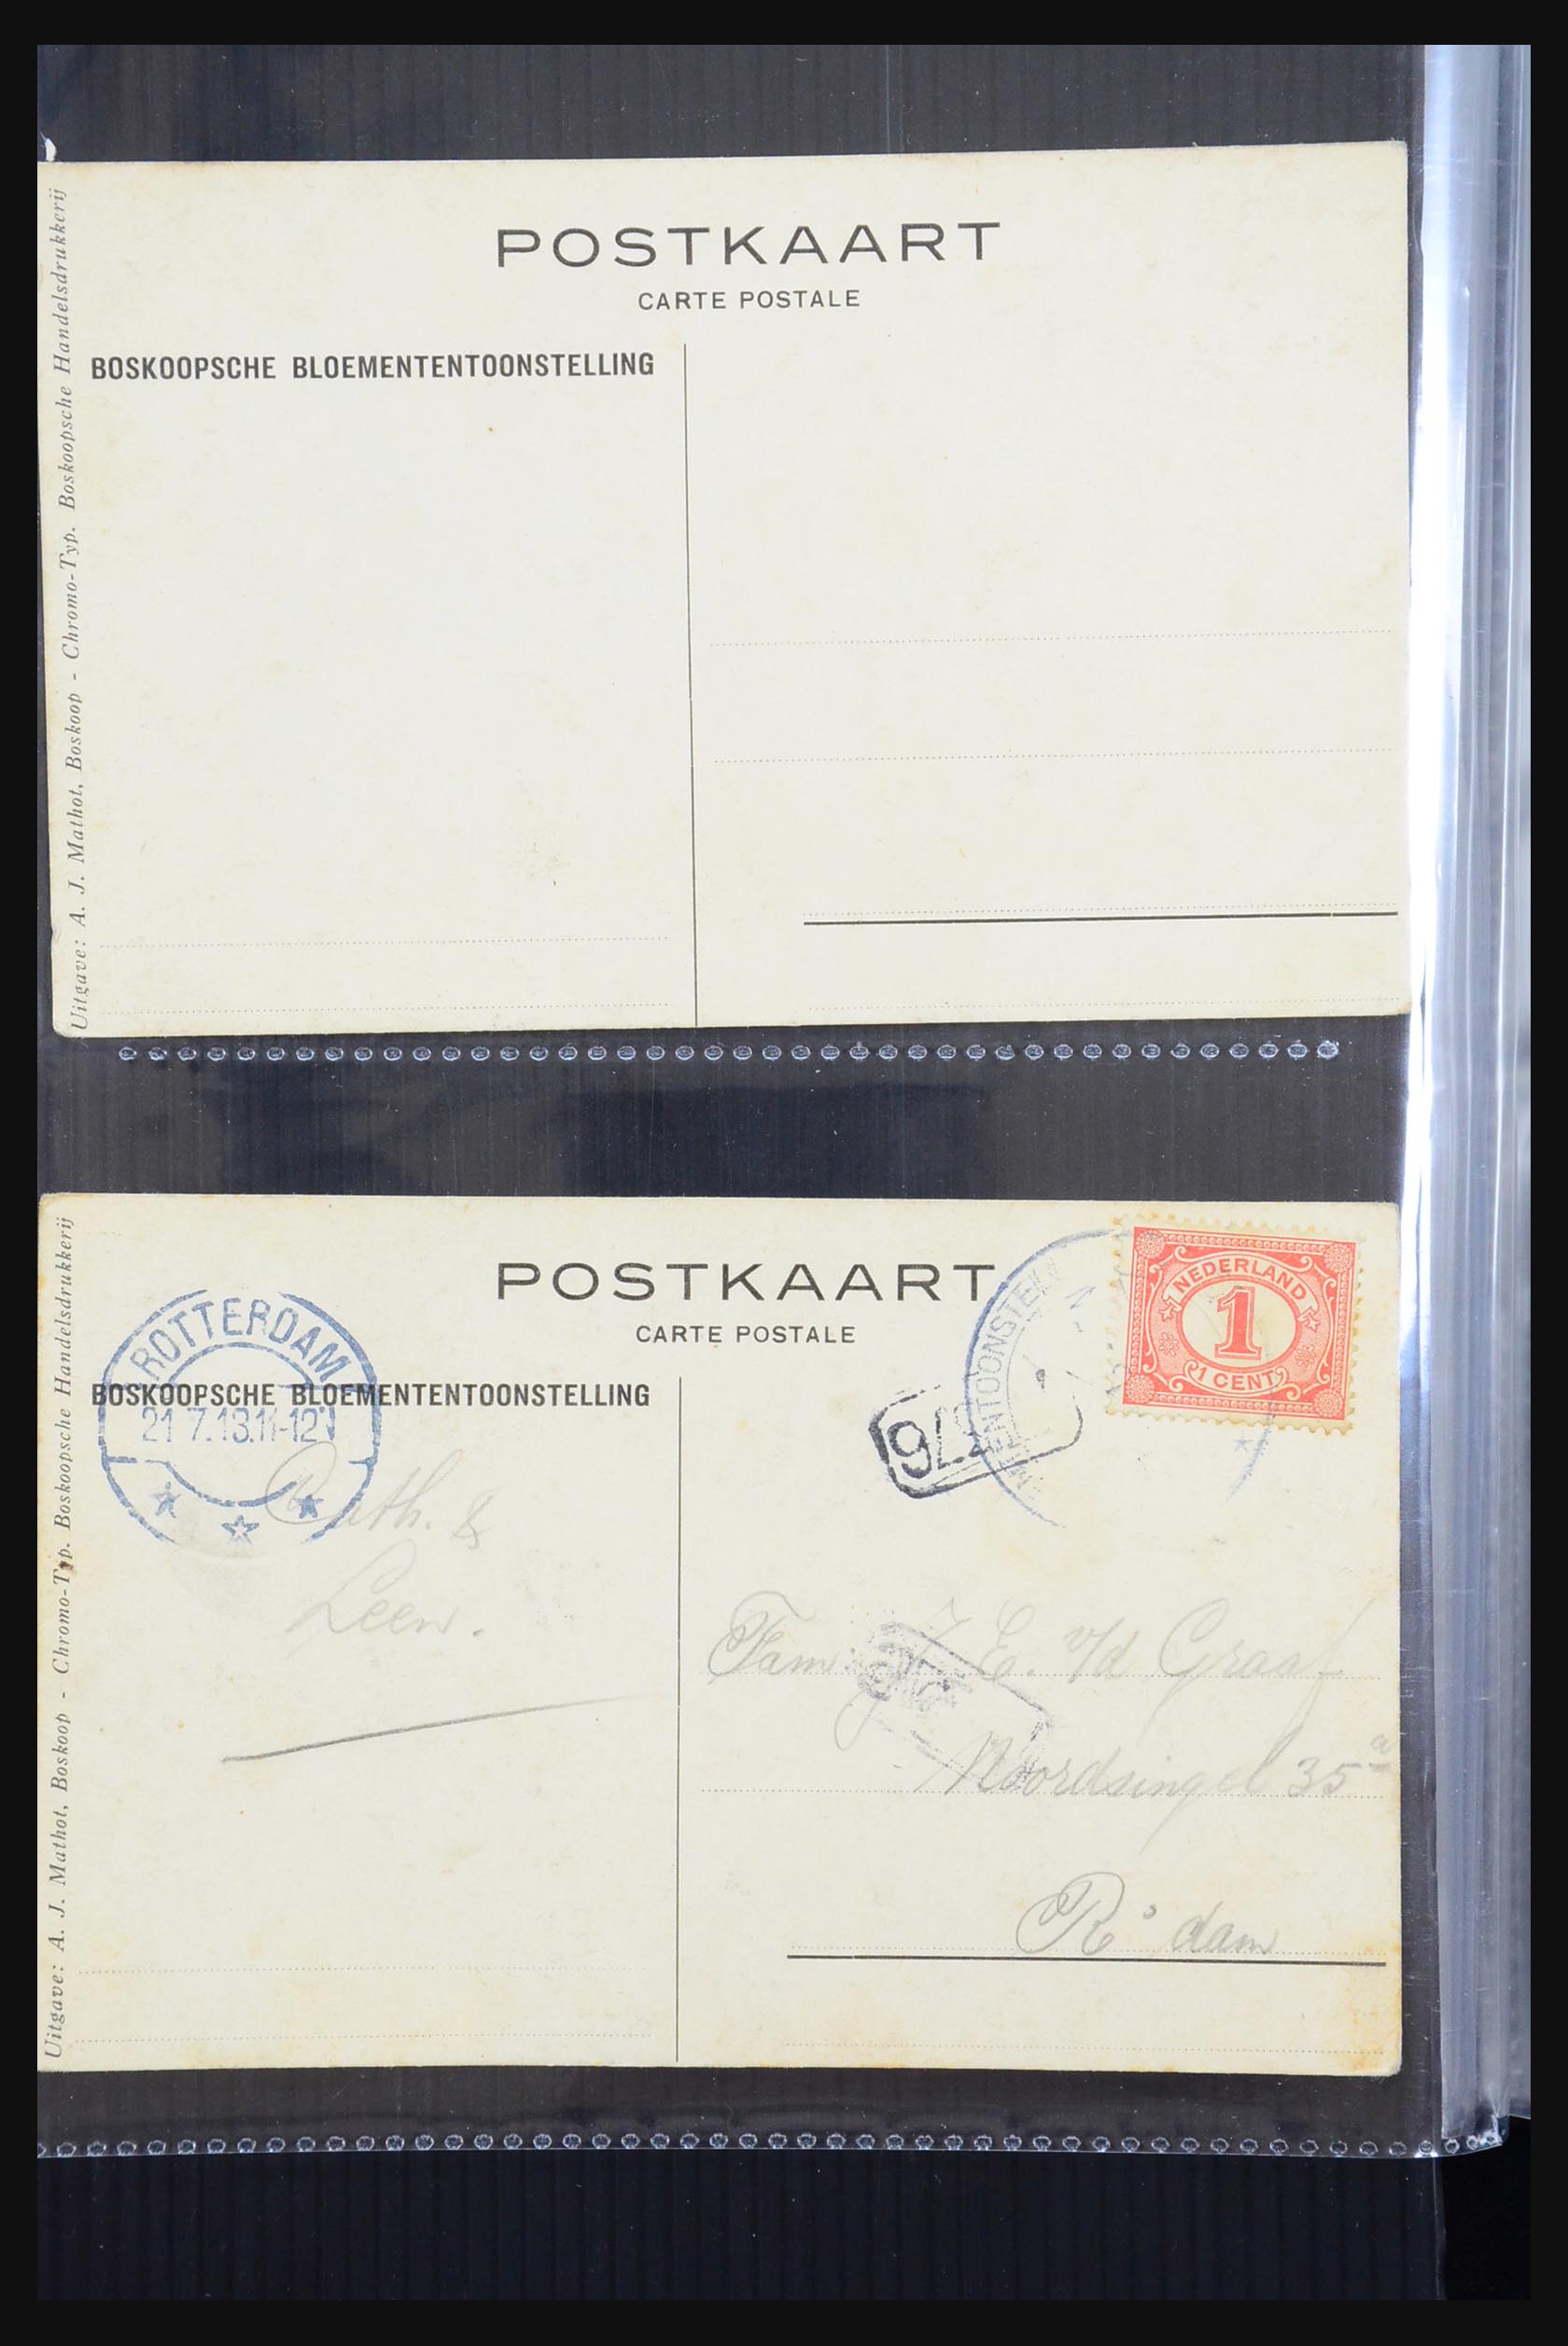 31338 056 - 31338 Nederland ansichtkaarten 1897-1914.